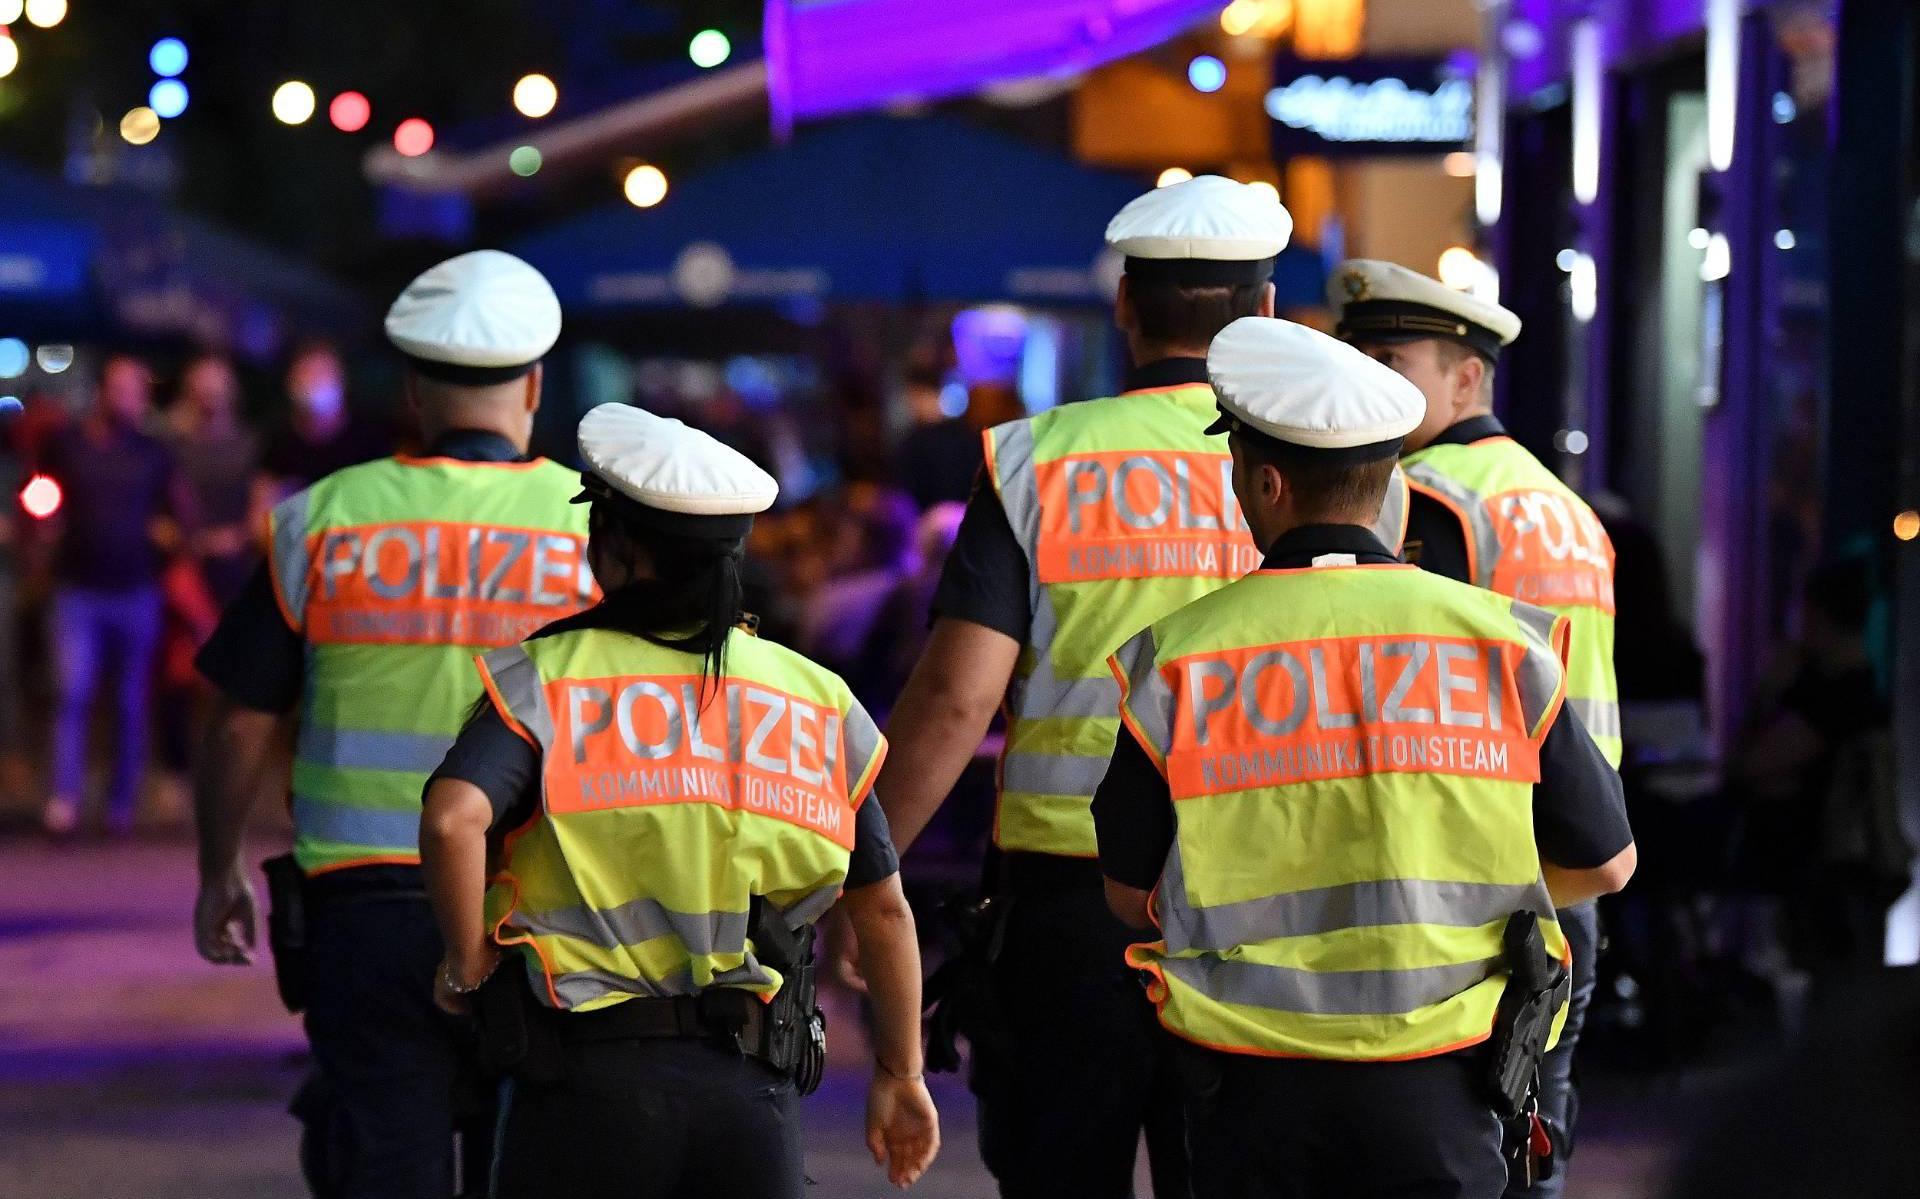 Duitse politie druk met uitgaanspubliek dat coronaregels negeert